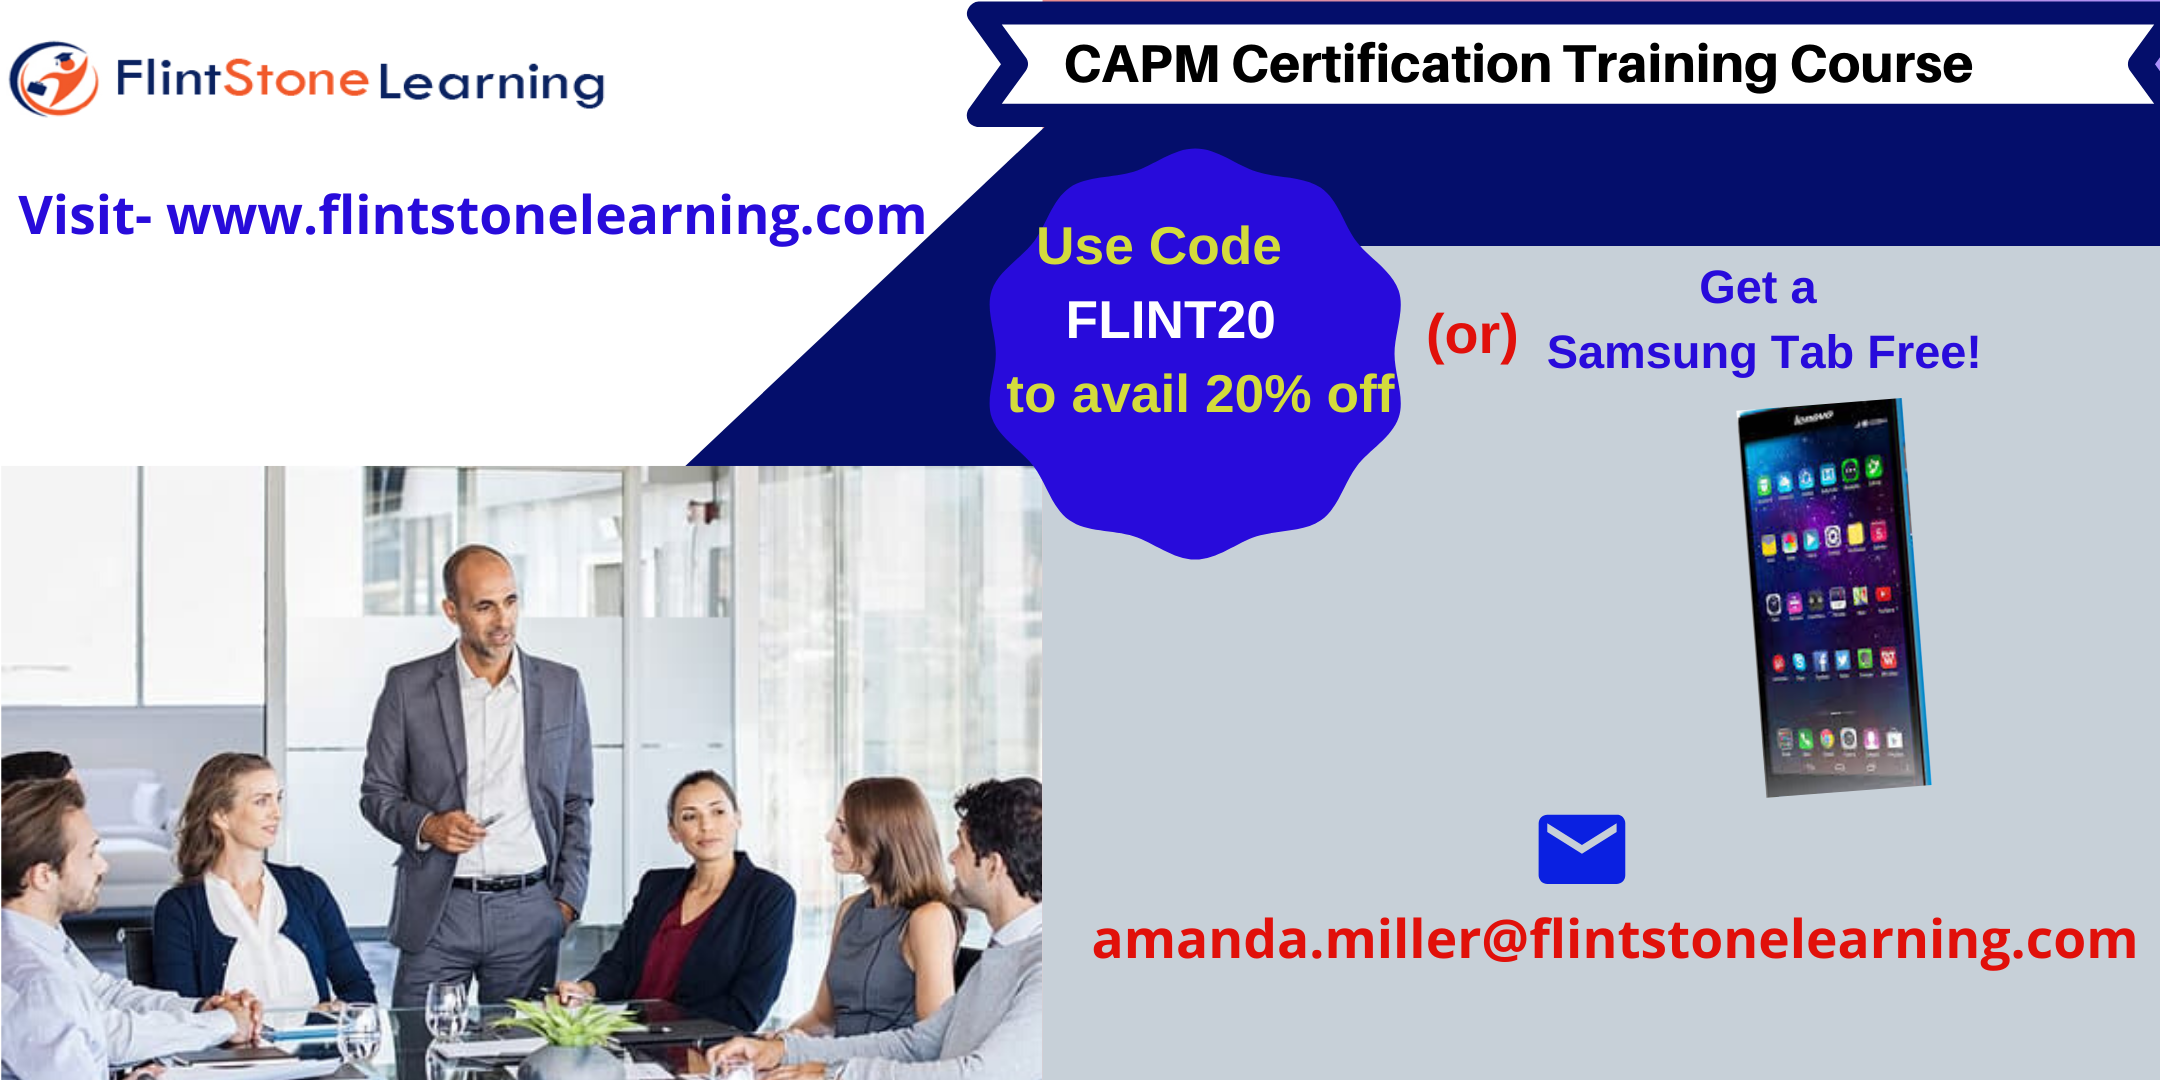 CAPM Certification Training Course in Edinburg, TX